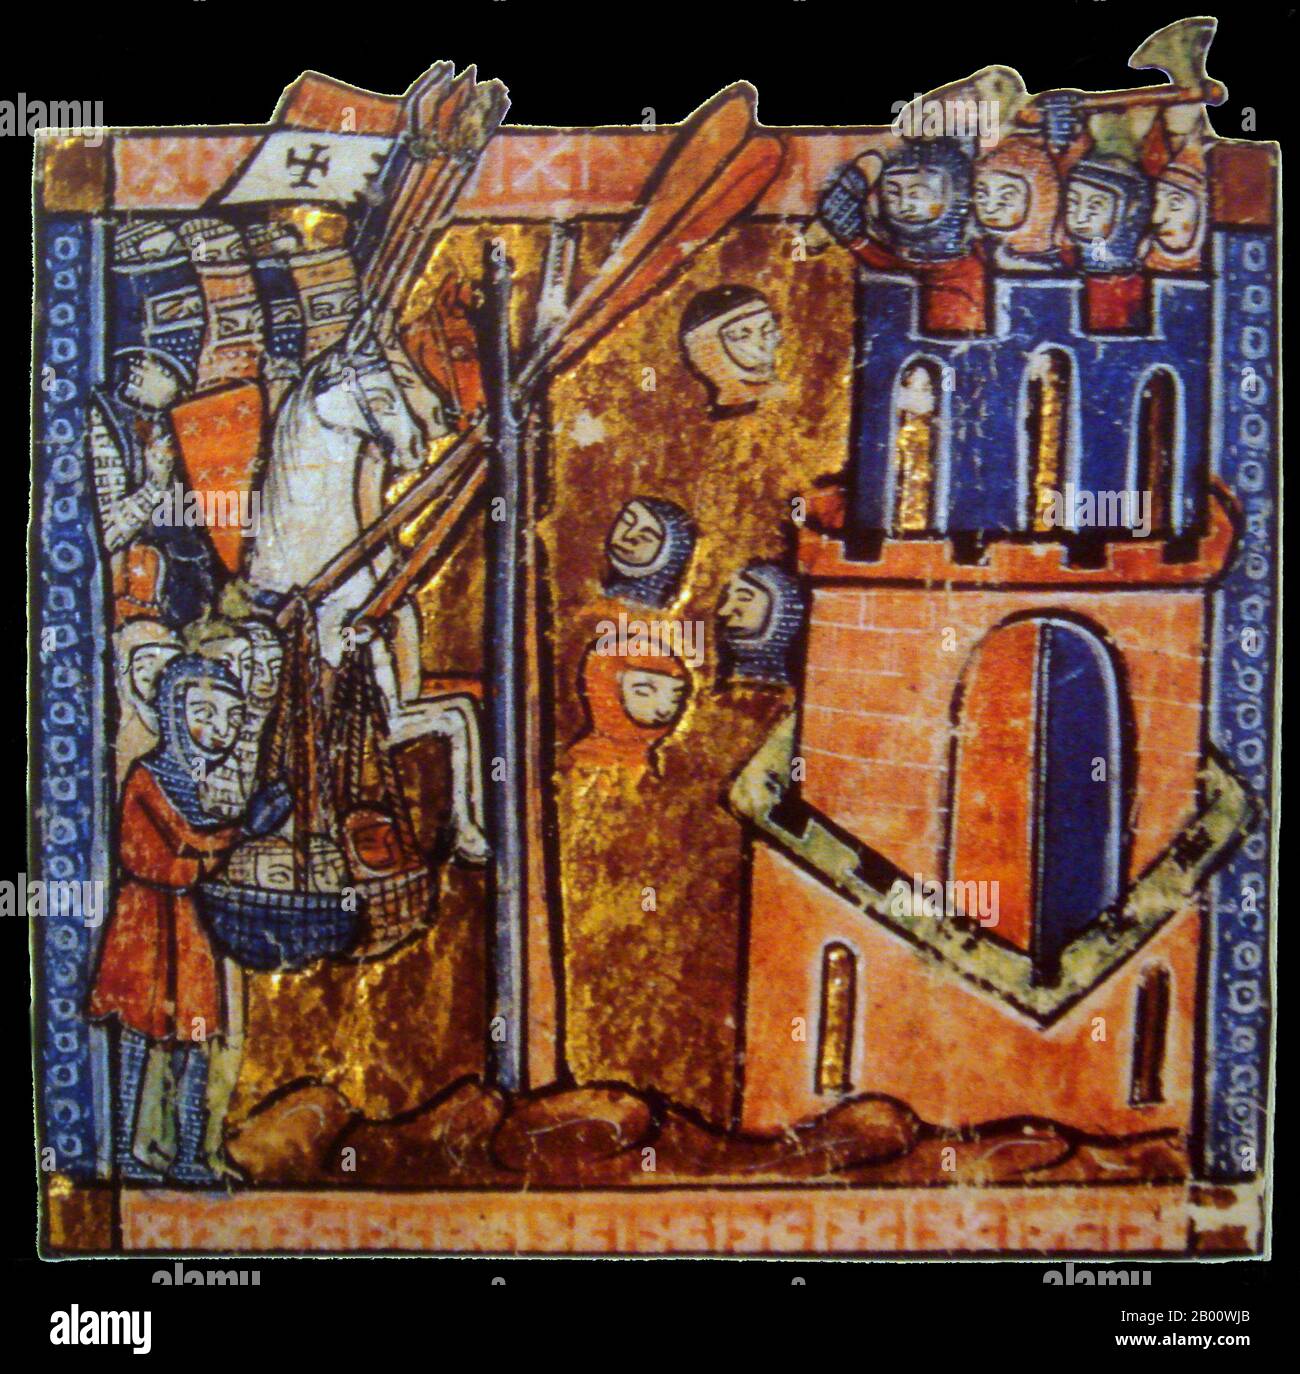 Turchia: L'assedio di Nicea (Iznik) nel 1097, i Crociati gettano capi di  musulmani sui bastioni (miniatura del XIII secolo). Prima Crociata  (1096-1099): Gli eserciti crociati si incrociarono in Asia minore durante la